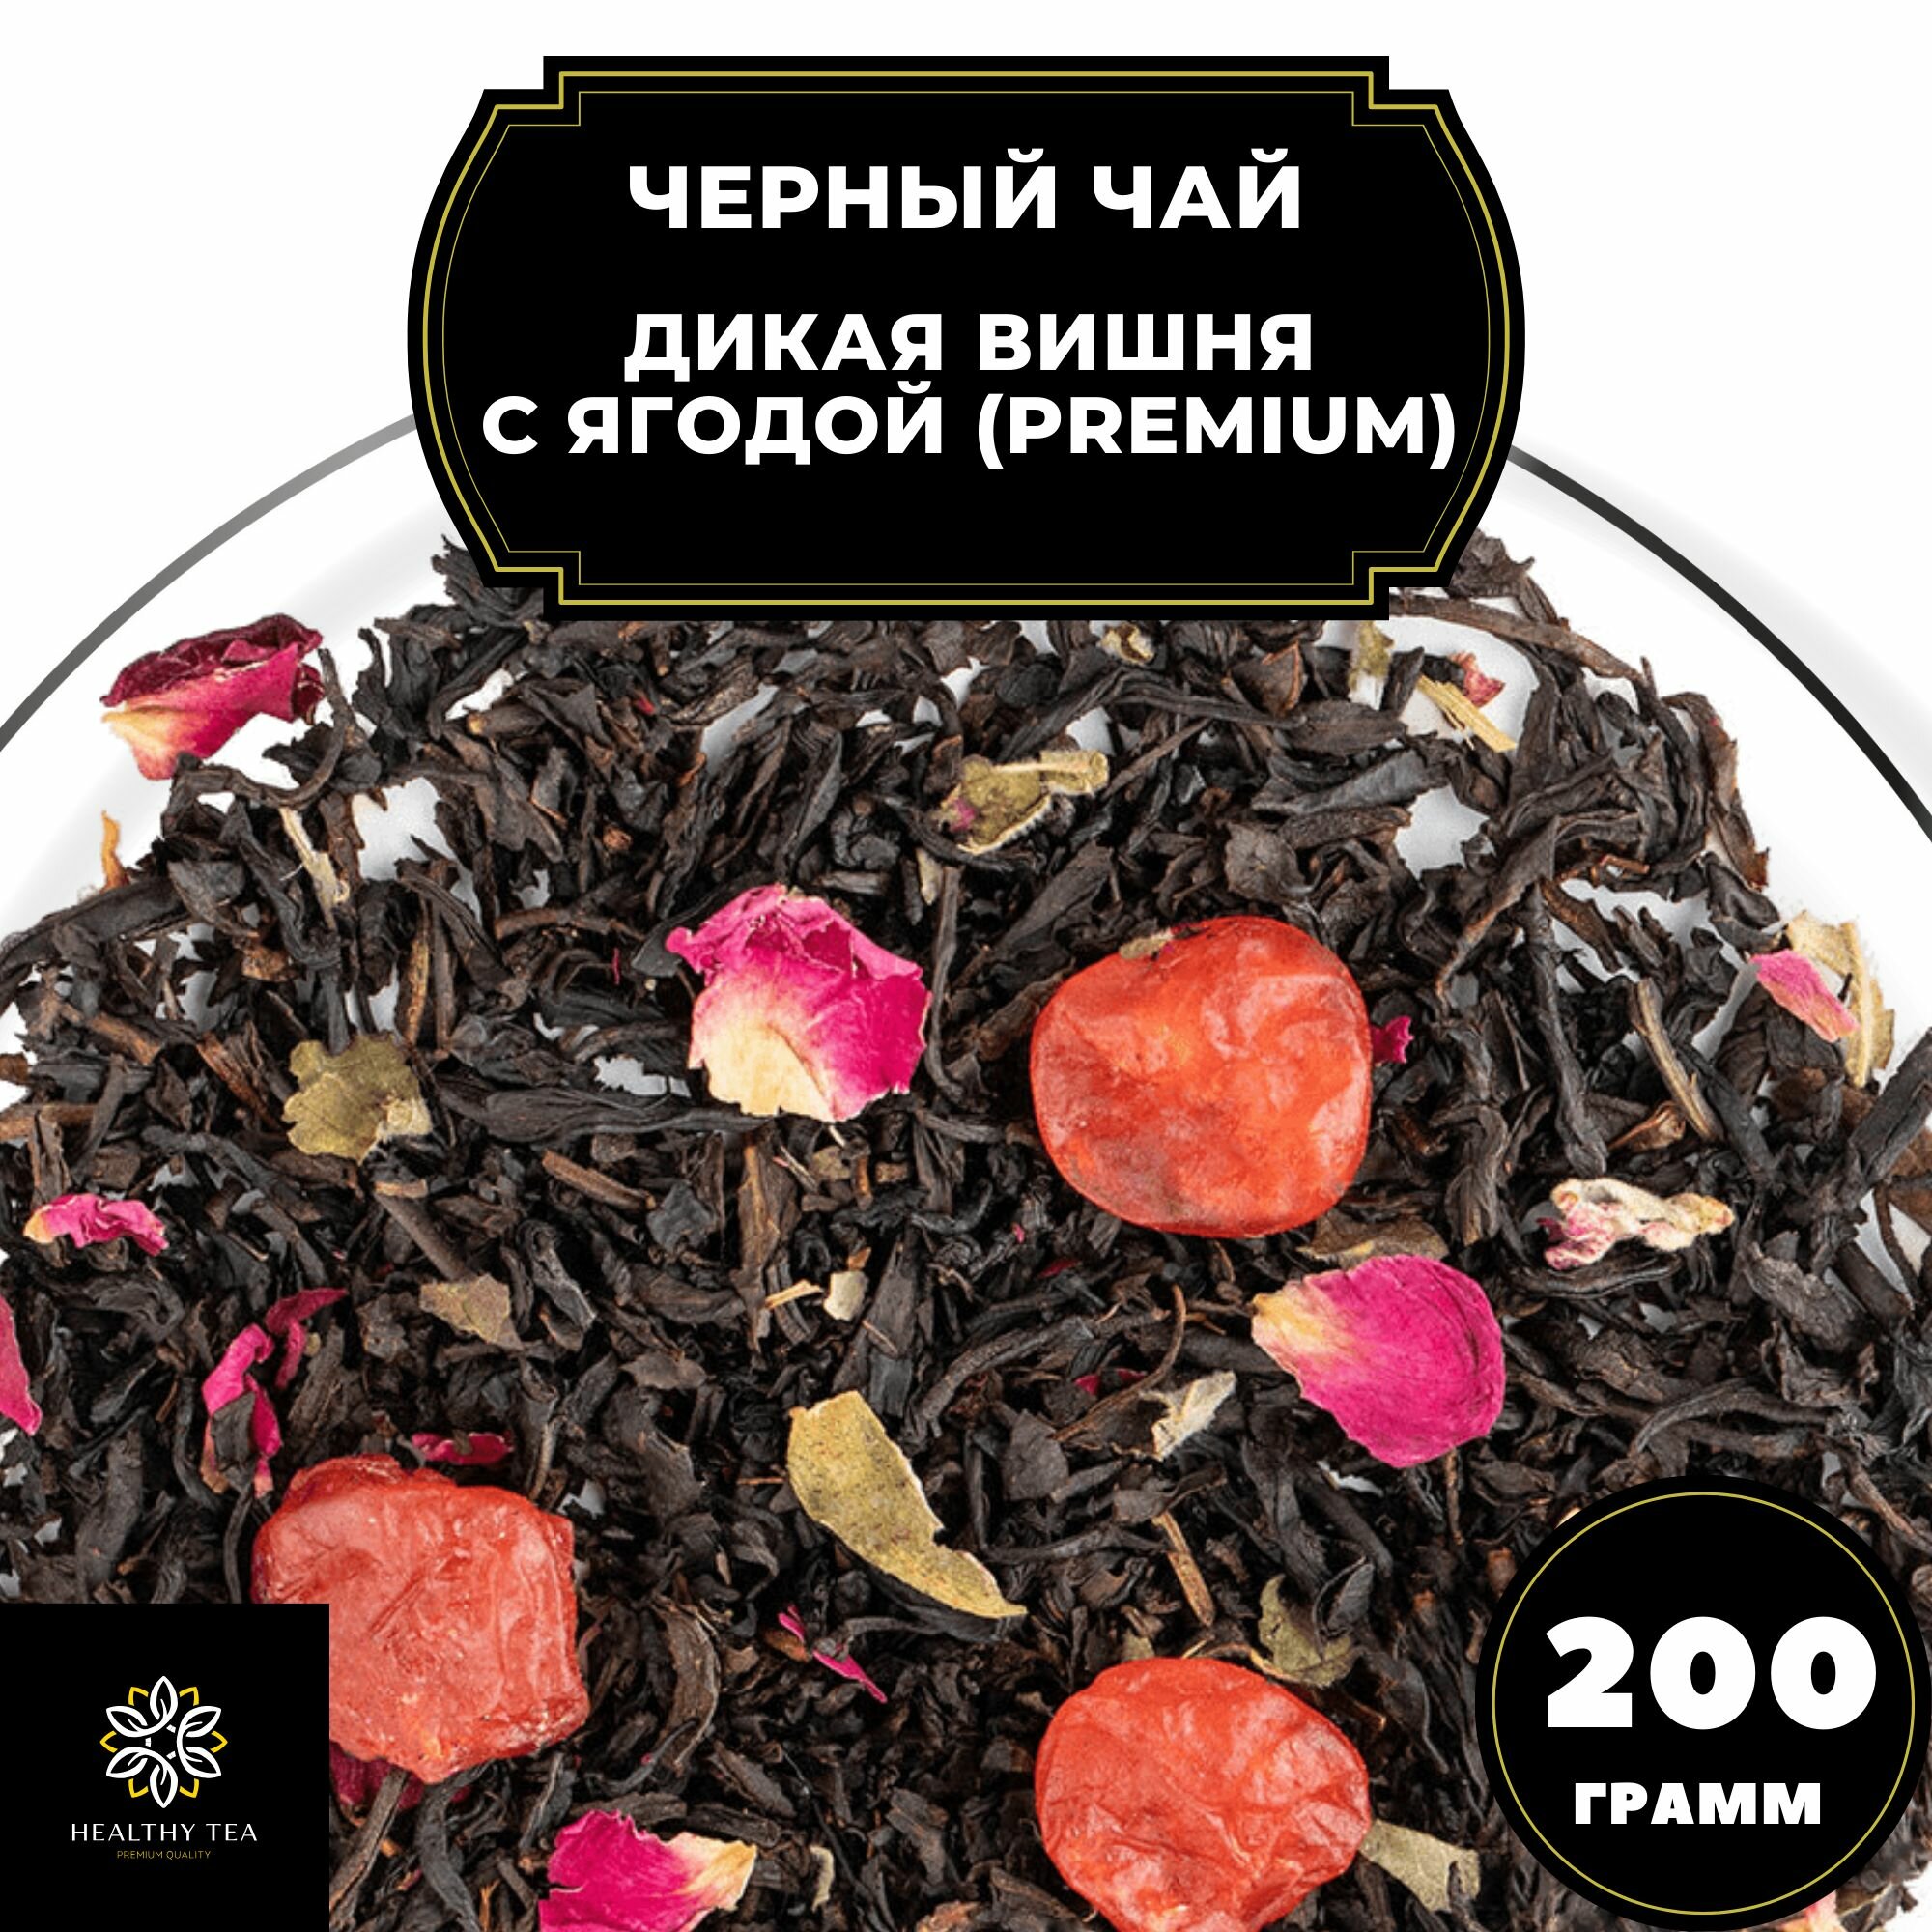 Китайский Черный чай с вишней и розой "Дикая вишня с ягодой" (Premium) Полезный чай / HEALTHY TEA, 200 гр